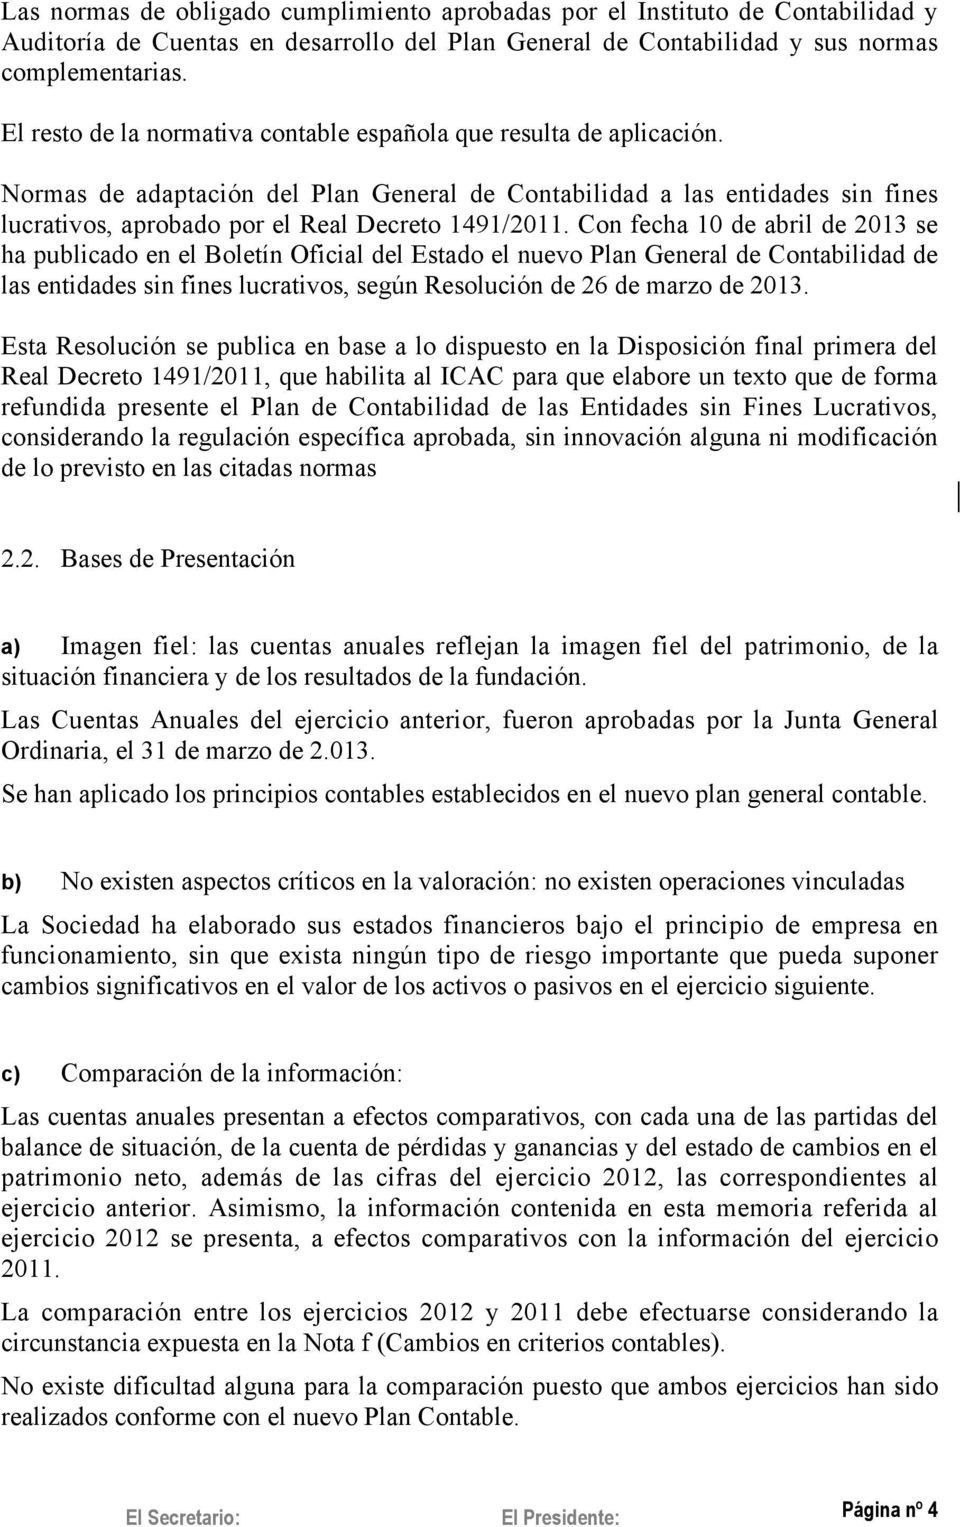 Normas de adaptación del Plan General de Contabilidad a las entidades sin fines lucrativos, aprobado por el Real Decreto 1491/2011.